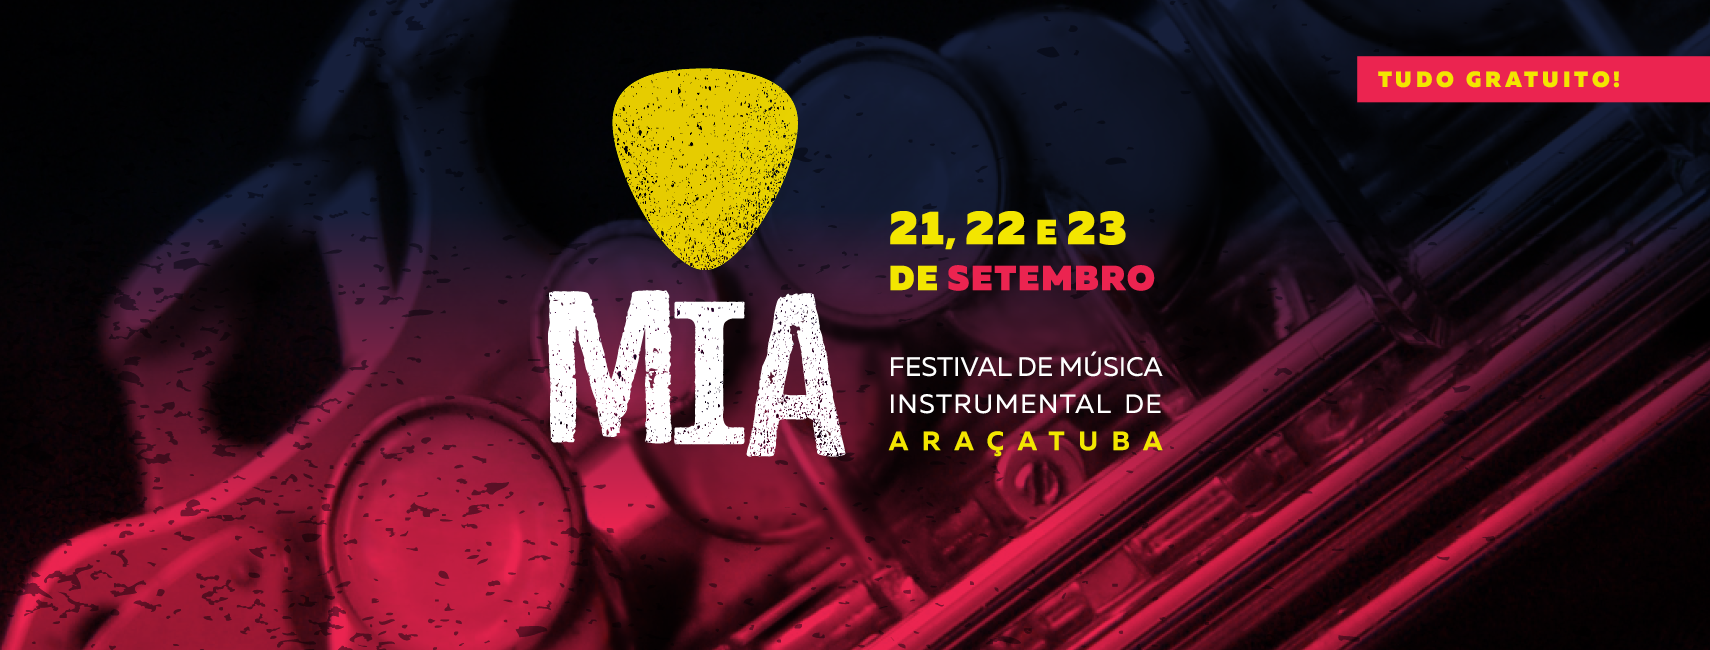 De 21 a 23 de setembro tem Festival de Música Instrumental de Araçatuba